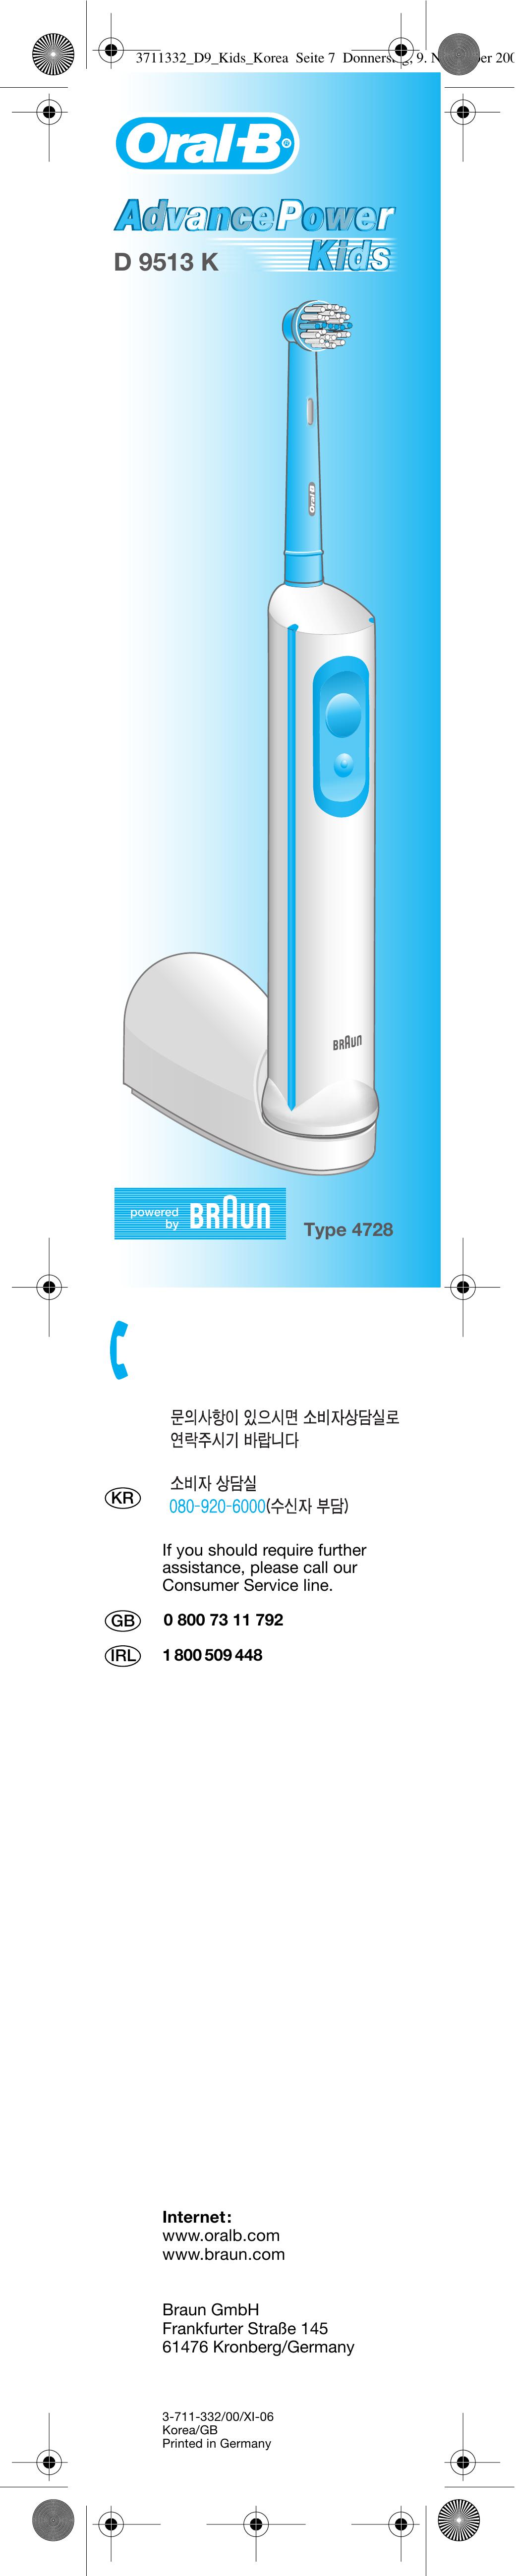 Braun 4728 Electric Toothbrush User Manual